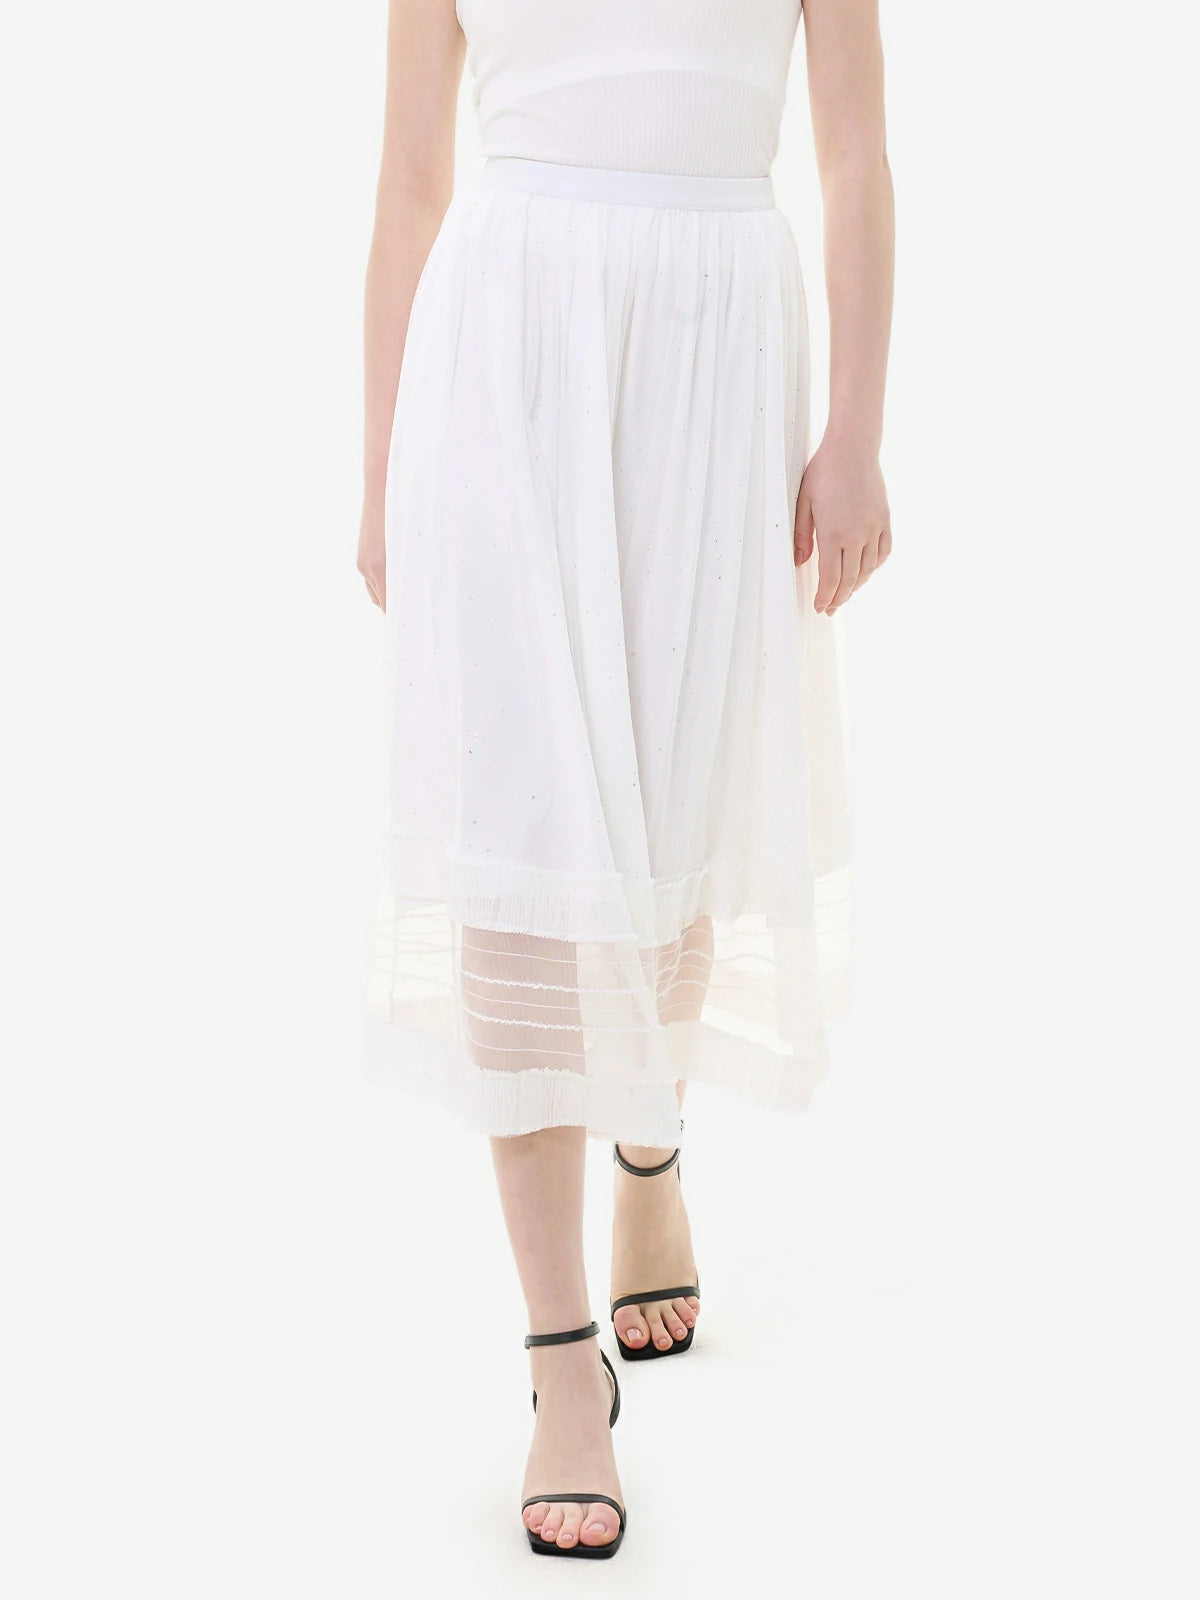 White elastic waist lace midi skirt